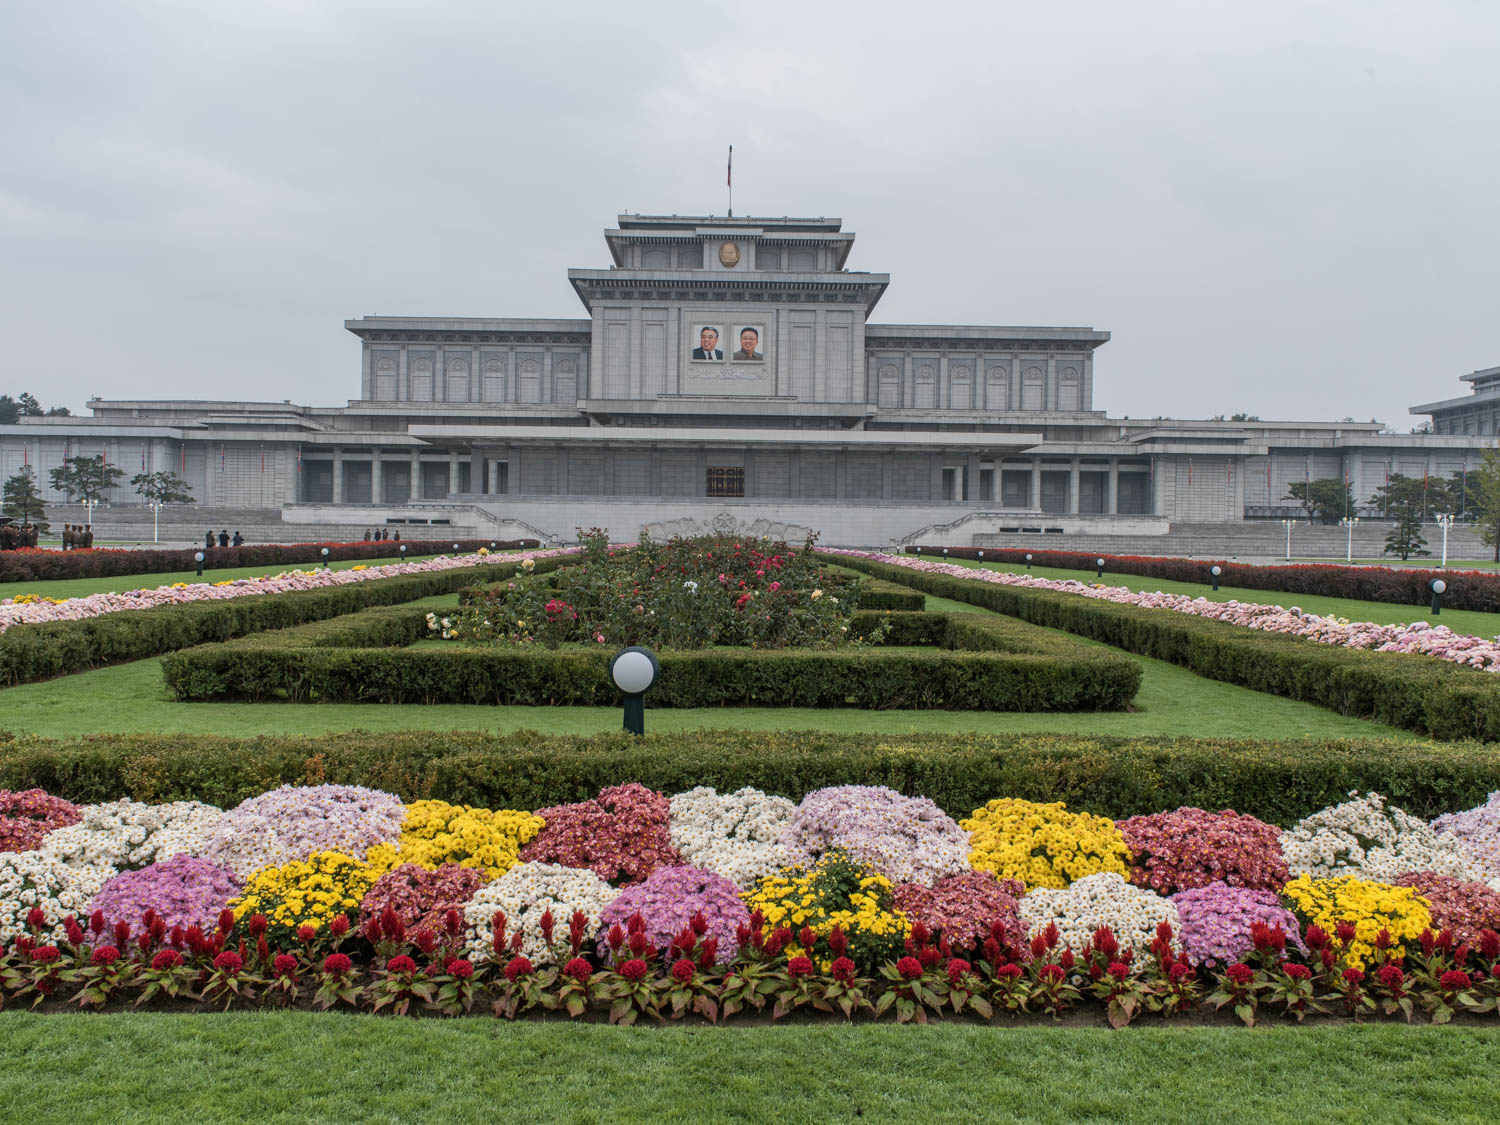 pyongyang tourism